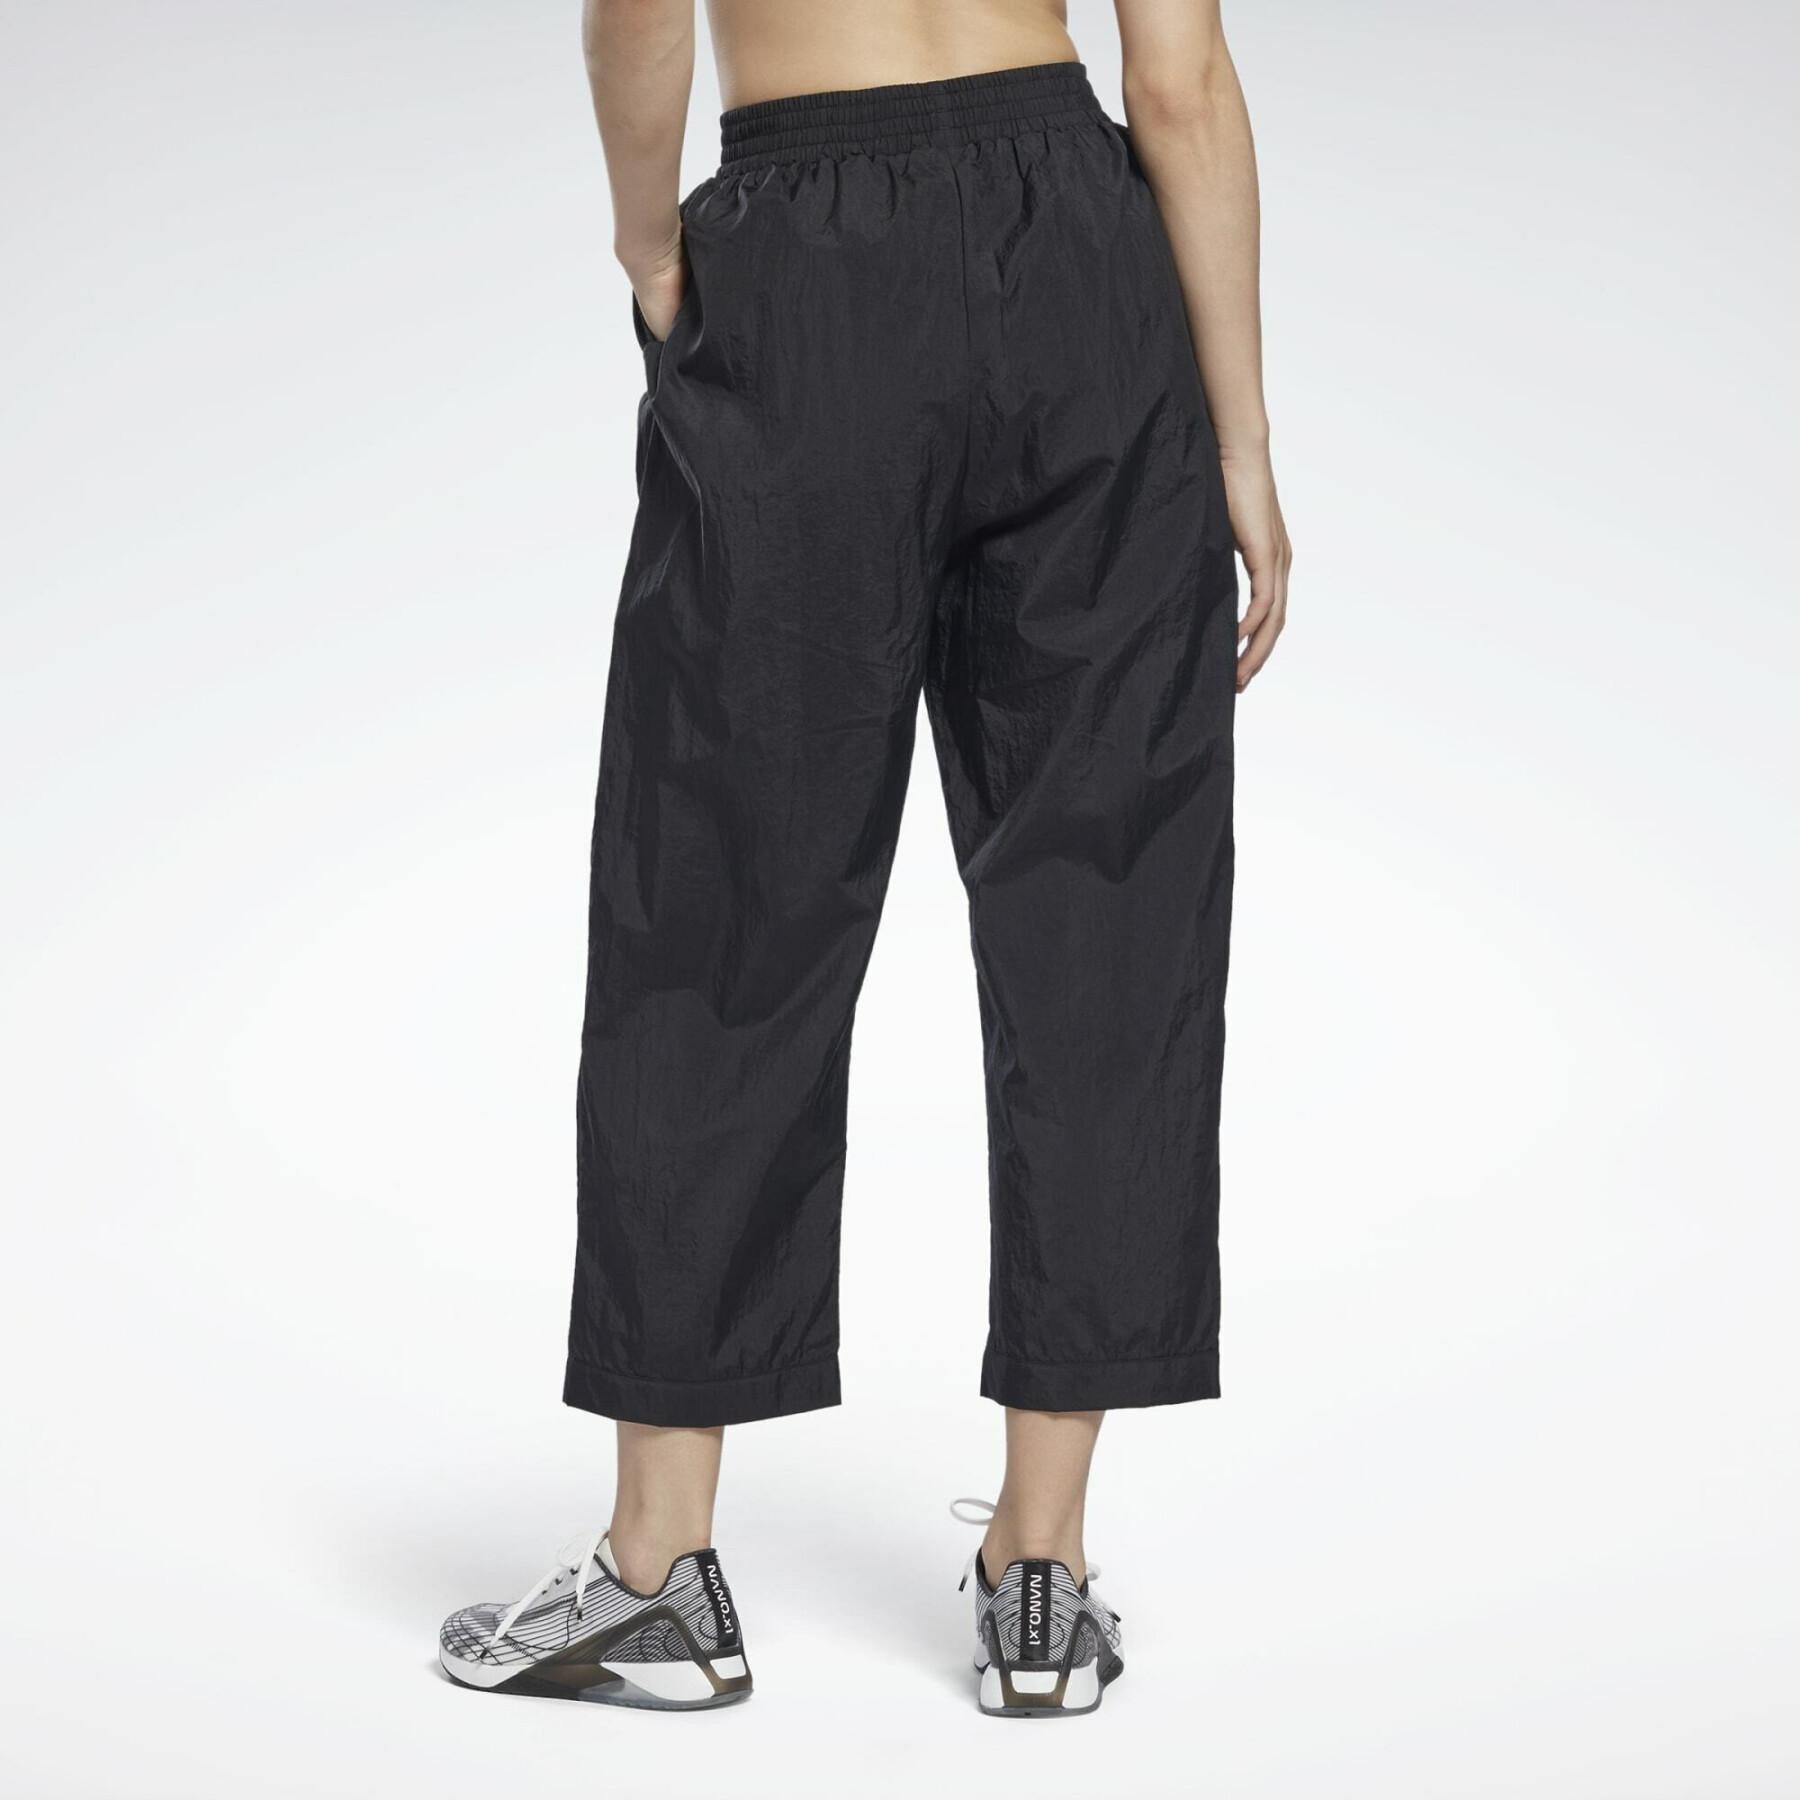 Women's trousers Reebok Trend Lightweight